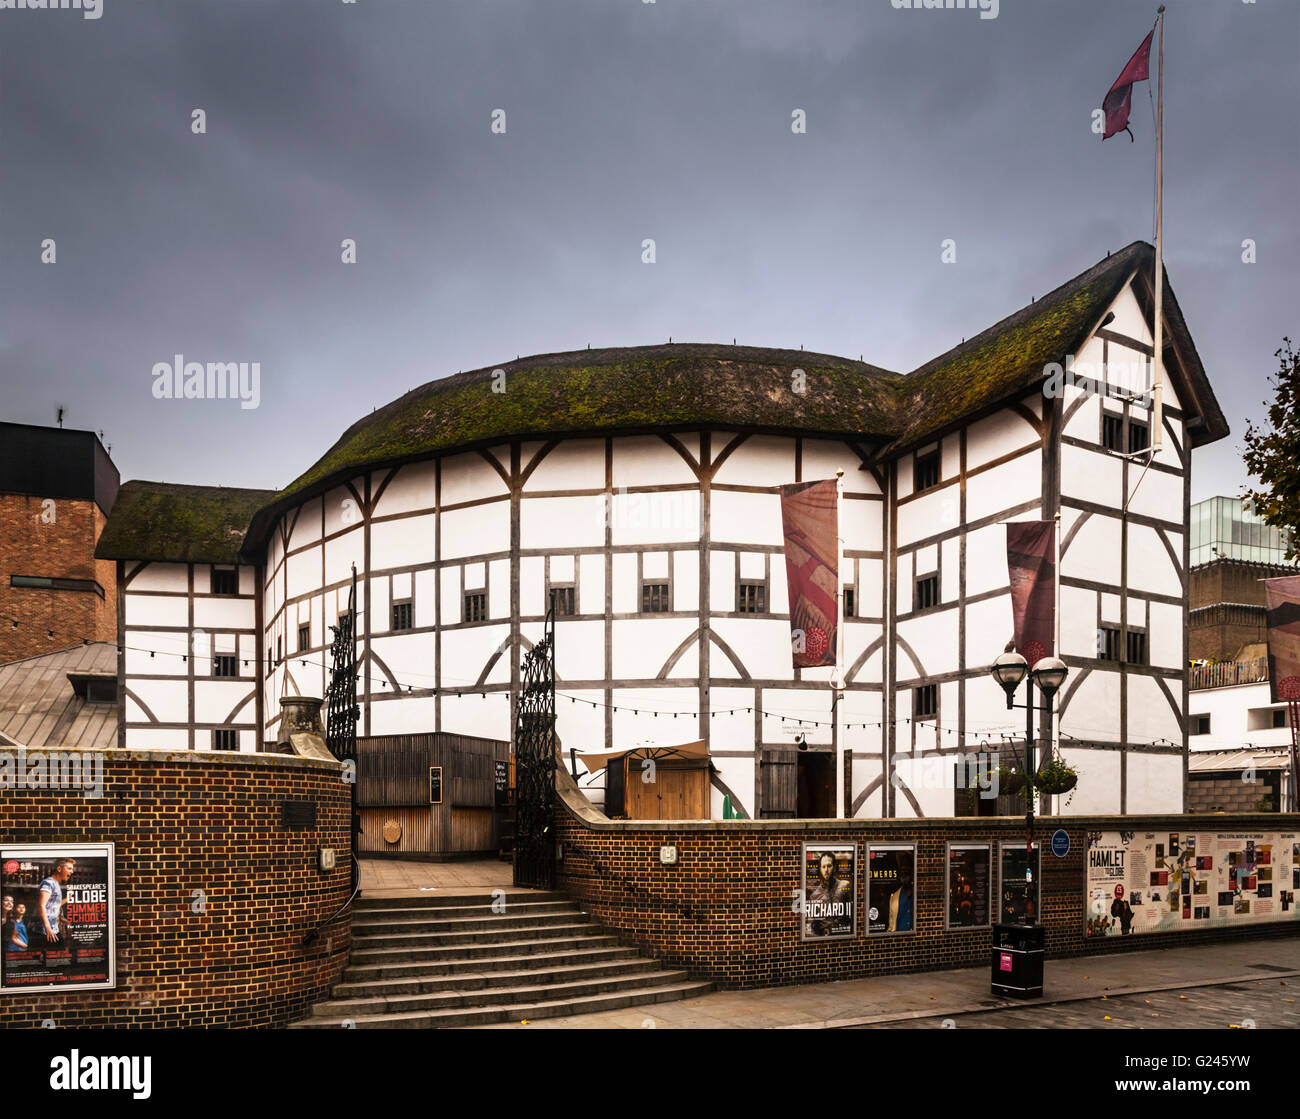 El Shakespeare's Globe, una reconstrucción del Teatro Globe, en Southwark, Londres, Inglaterra. Foto de stock